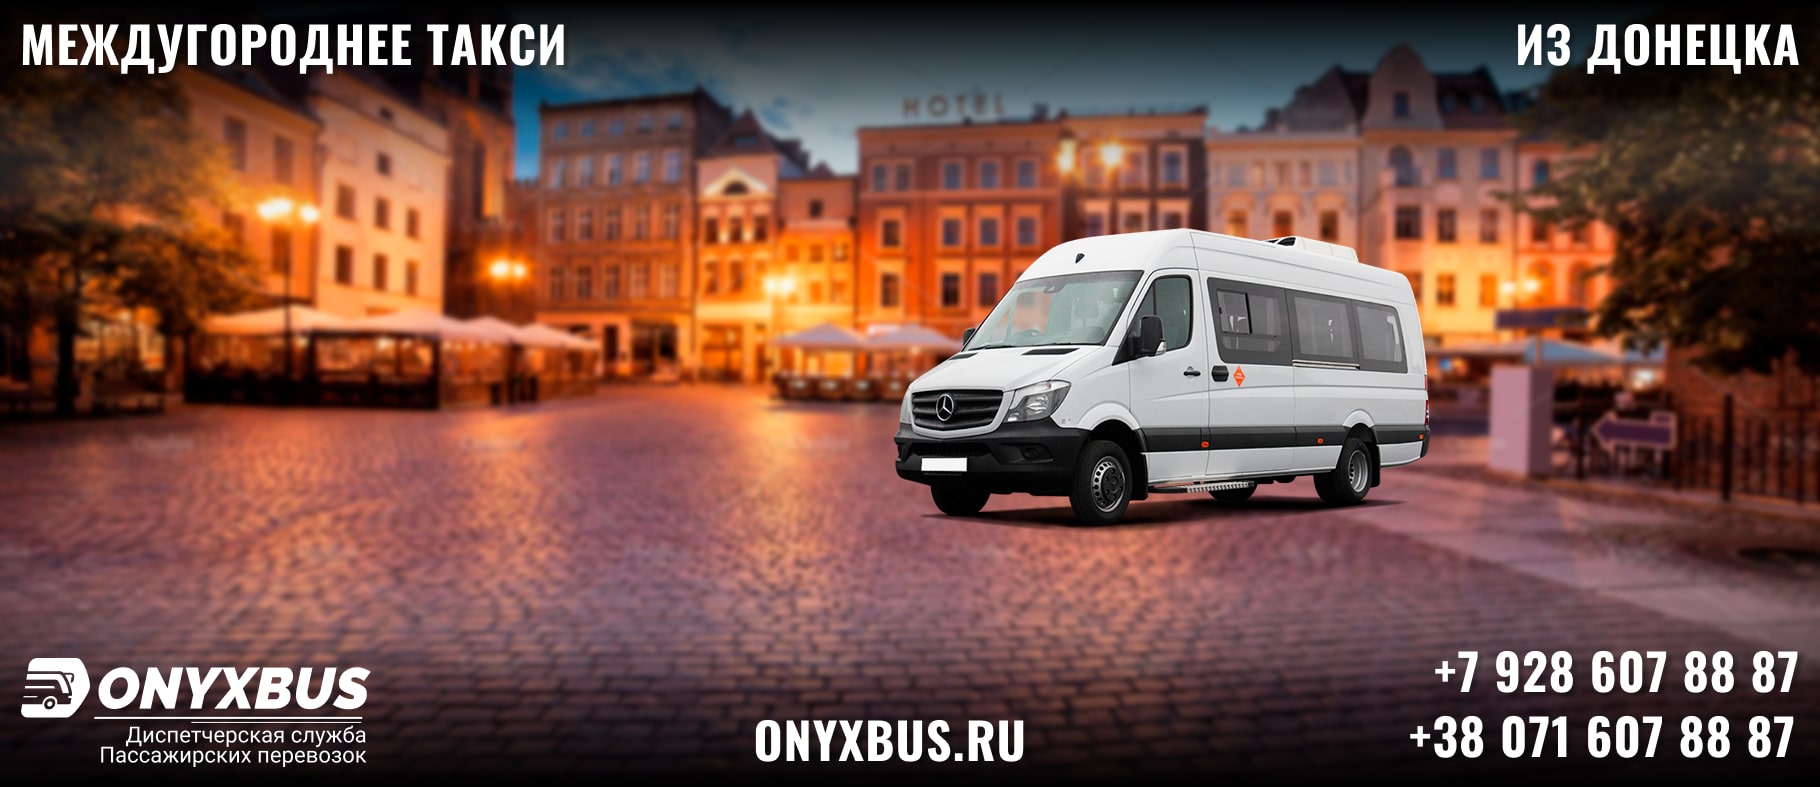 Заказ <br>Микроавтобуса Донецк - Калуга